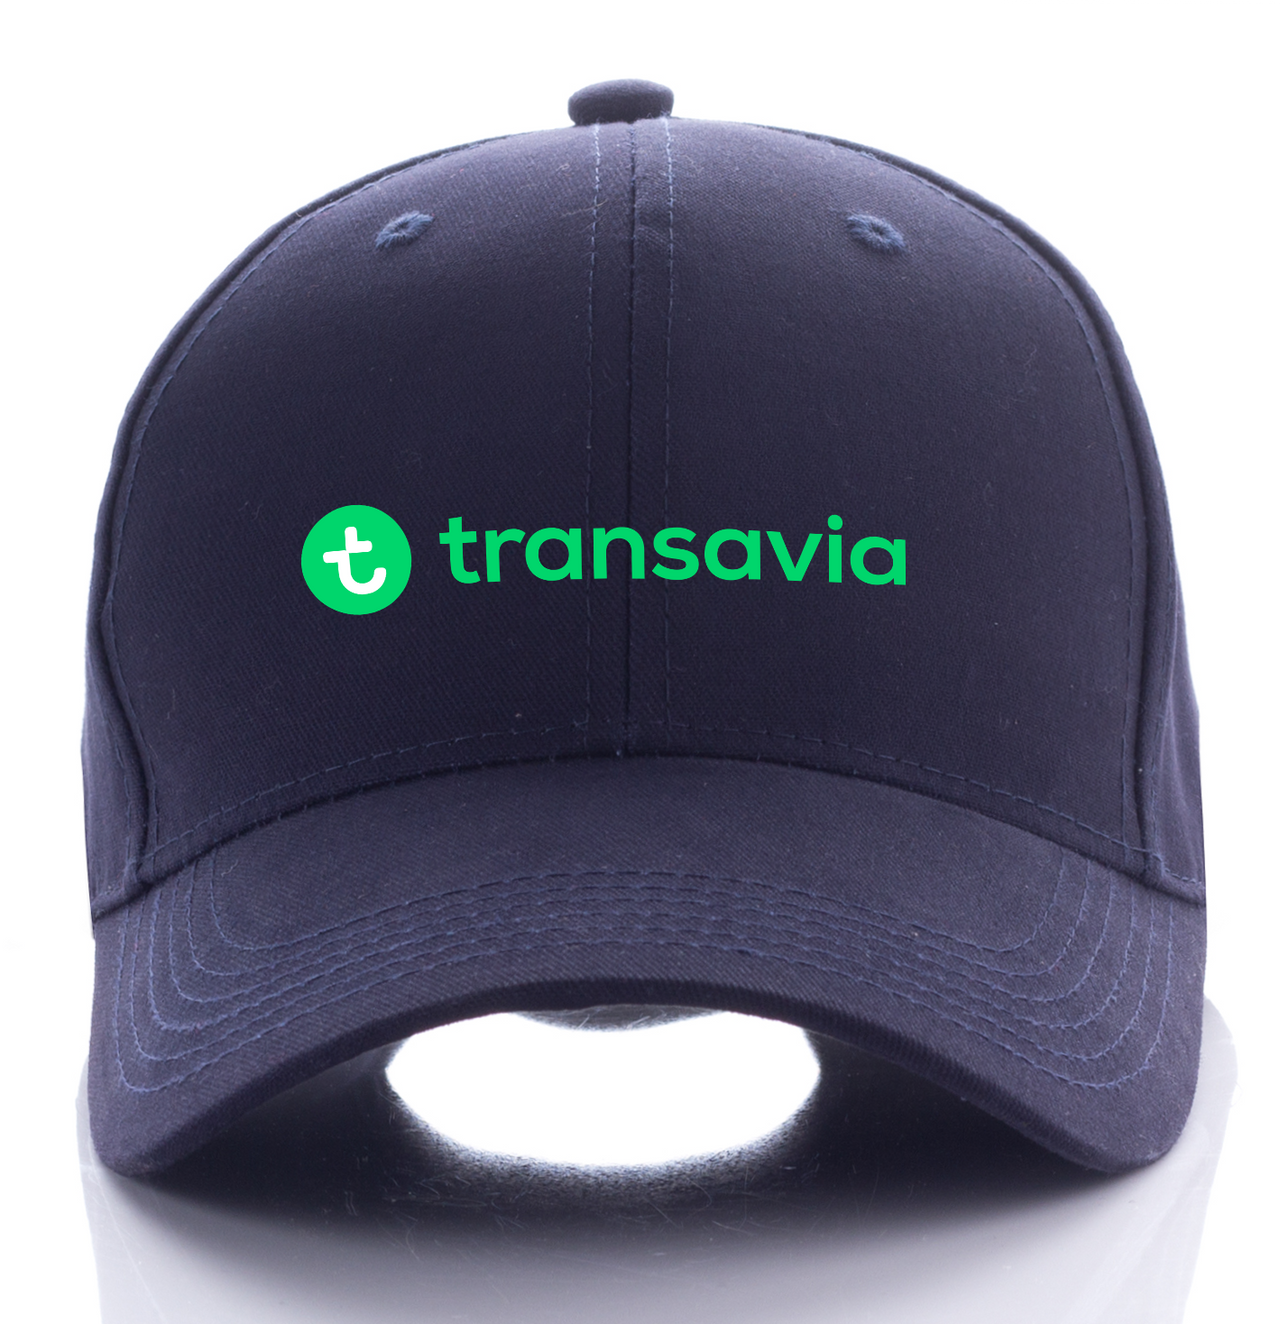 TRANSAVIA AIRLINE DESIGNED CAP